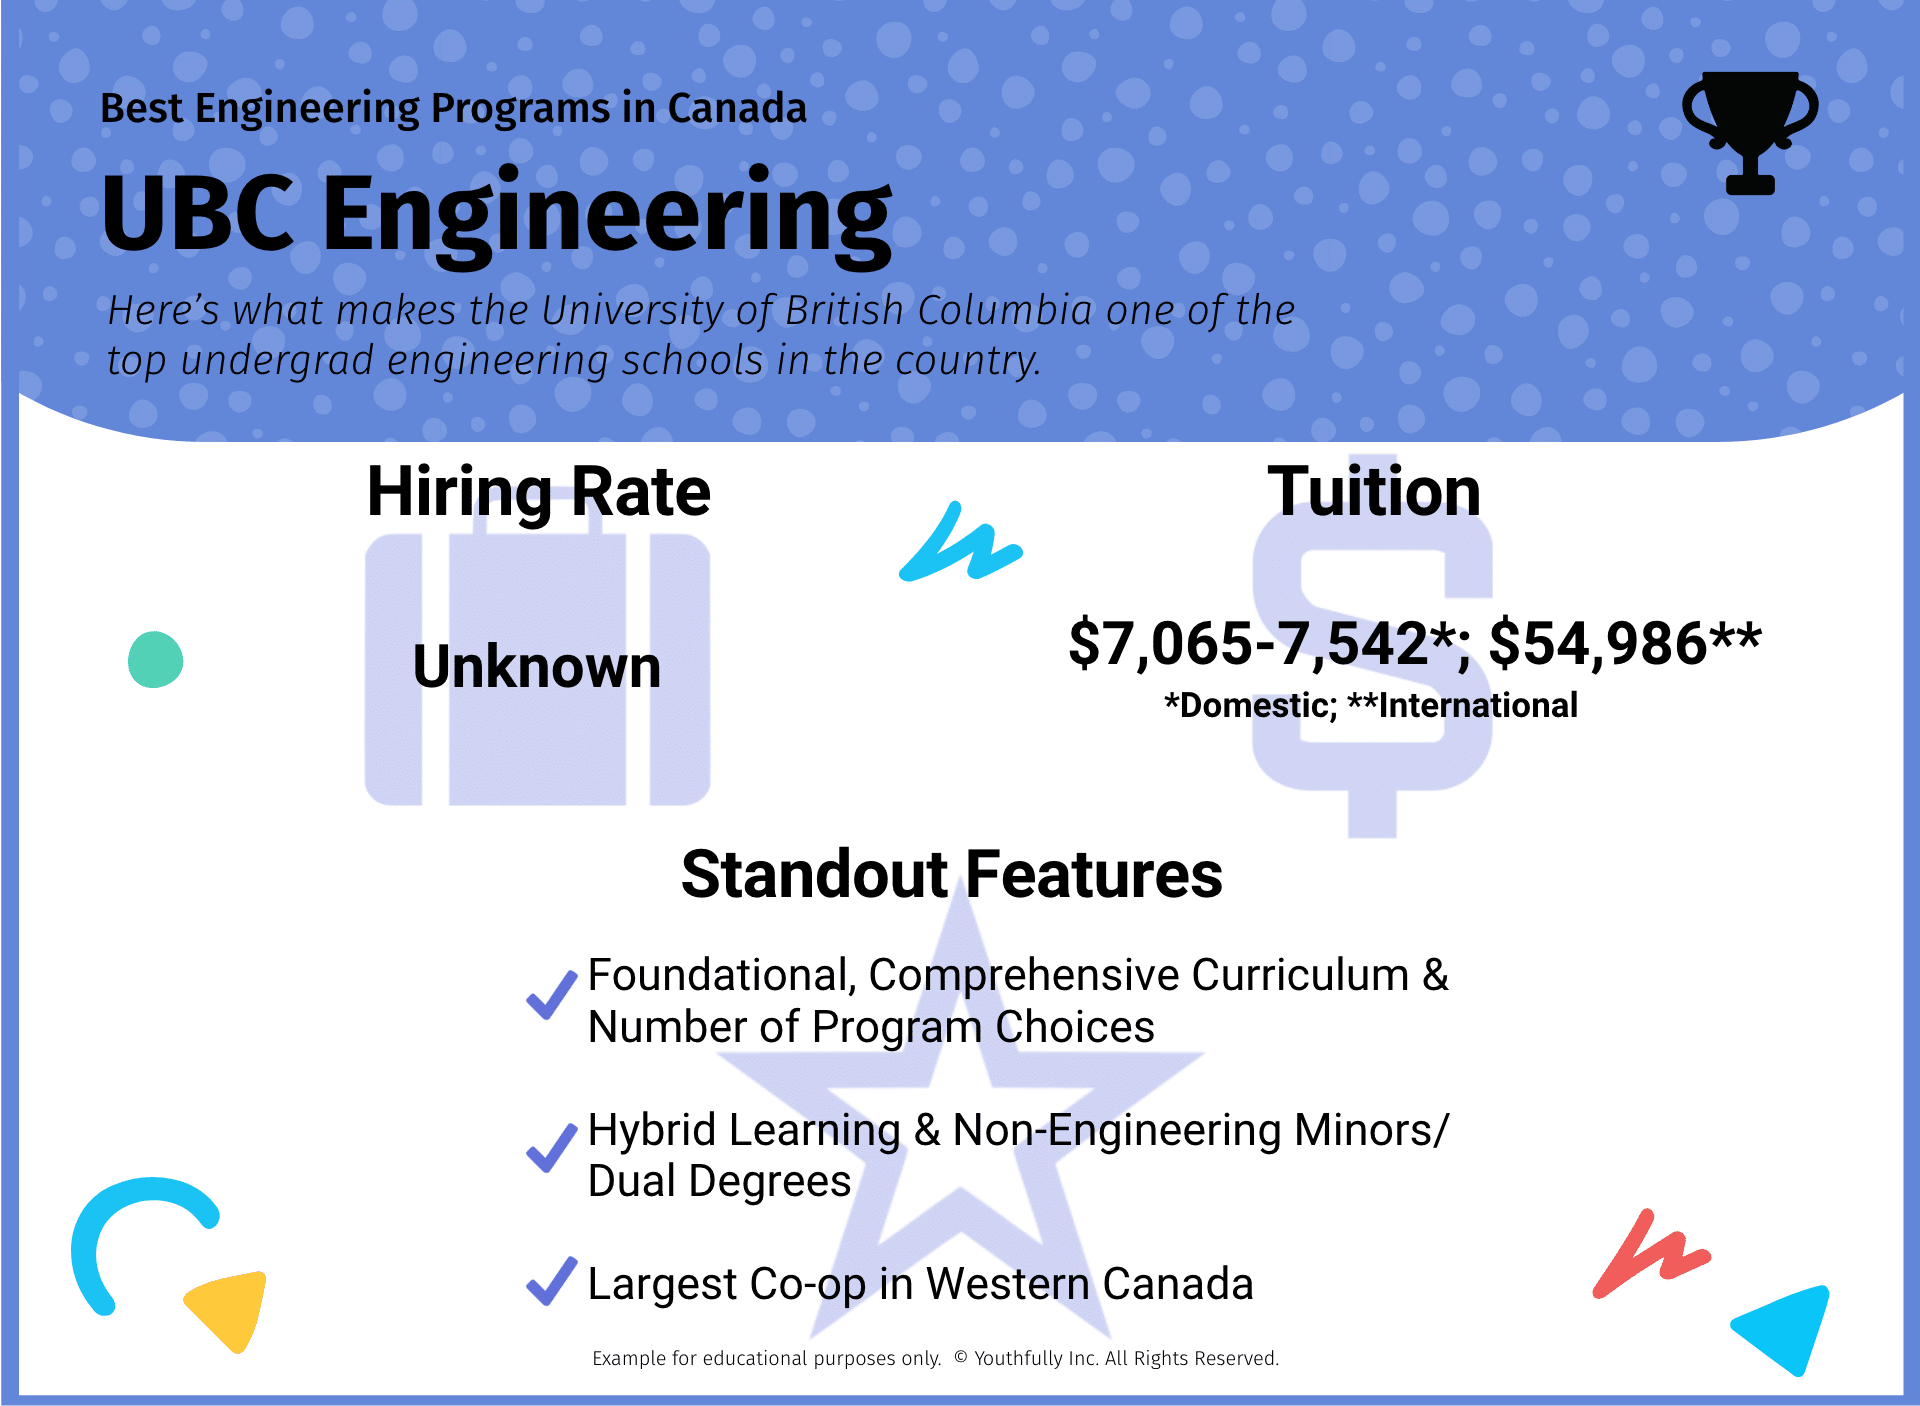 best engineering schools in canada best universities in canada for engineering undergraduate programs best engineering programs in canada ubc engineering